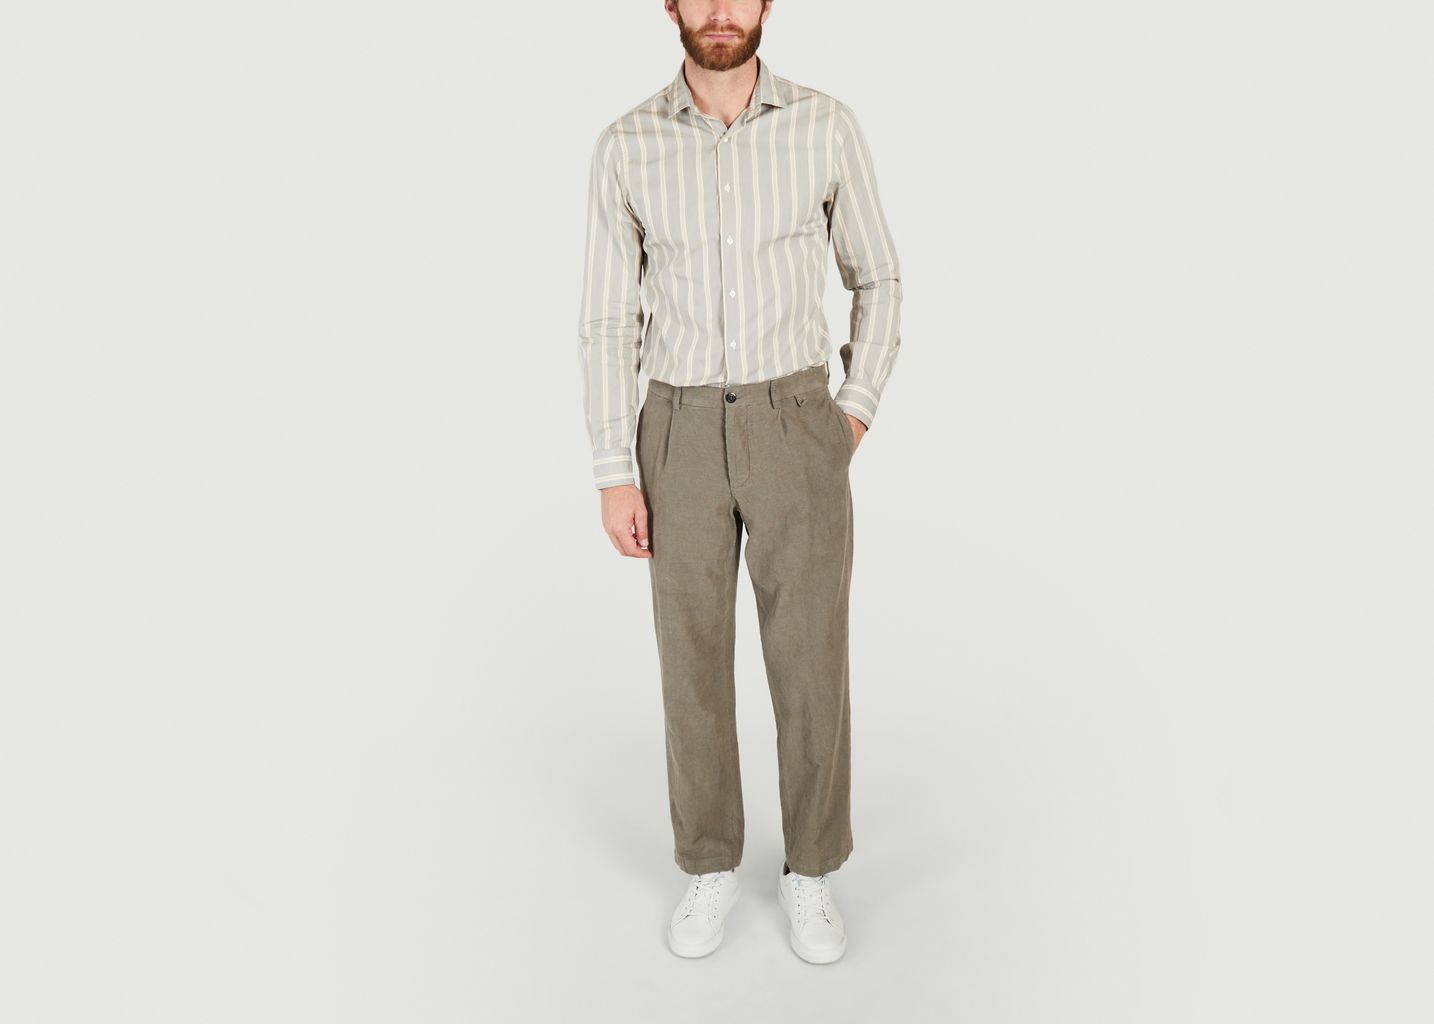 Pantalon Miniera en chanvre laine et coton  - A.B.C.L. Garments